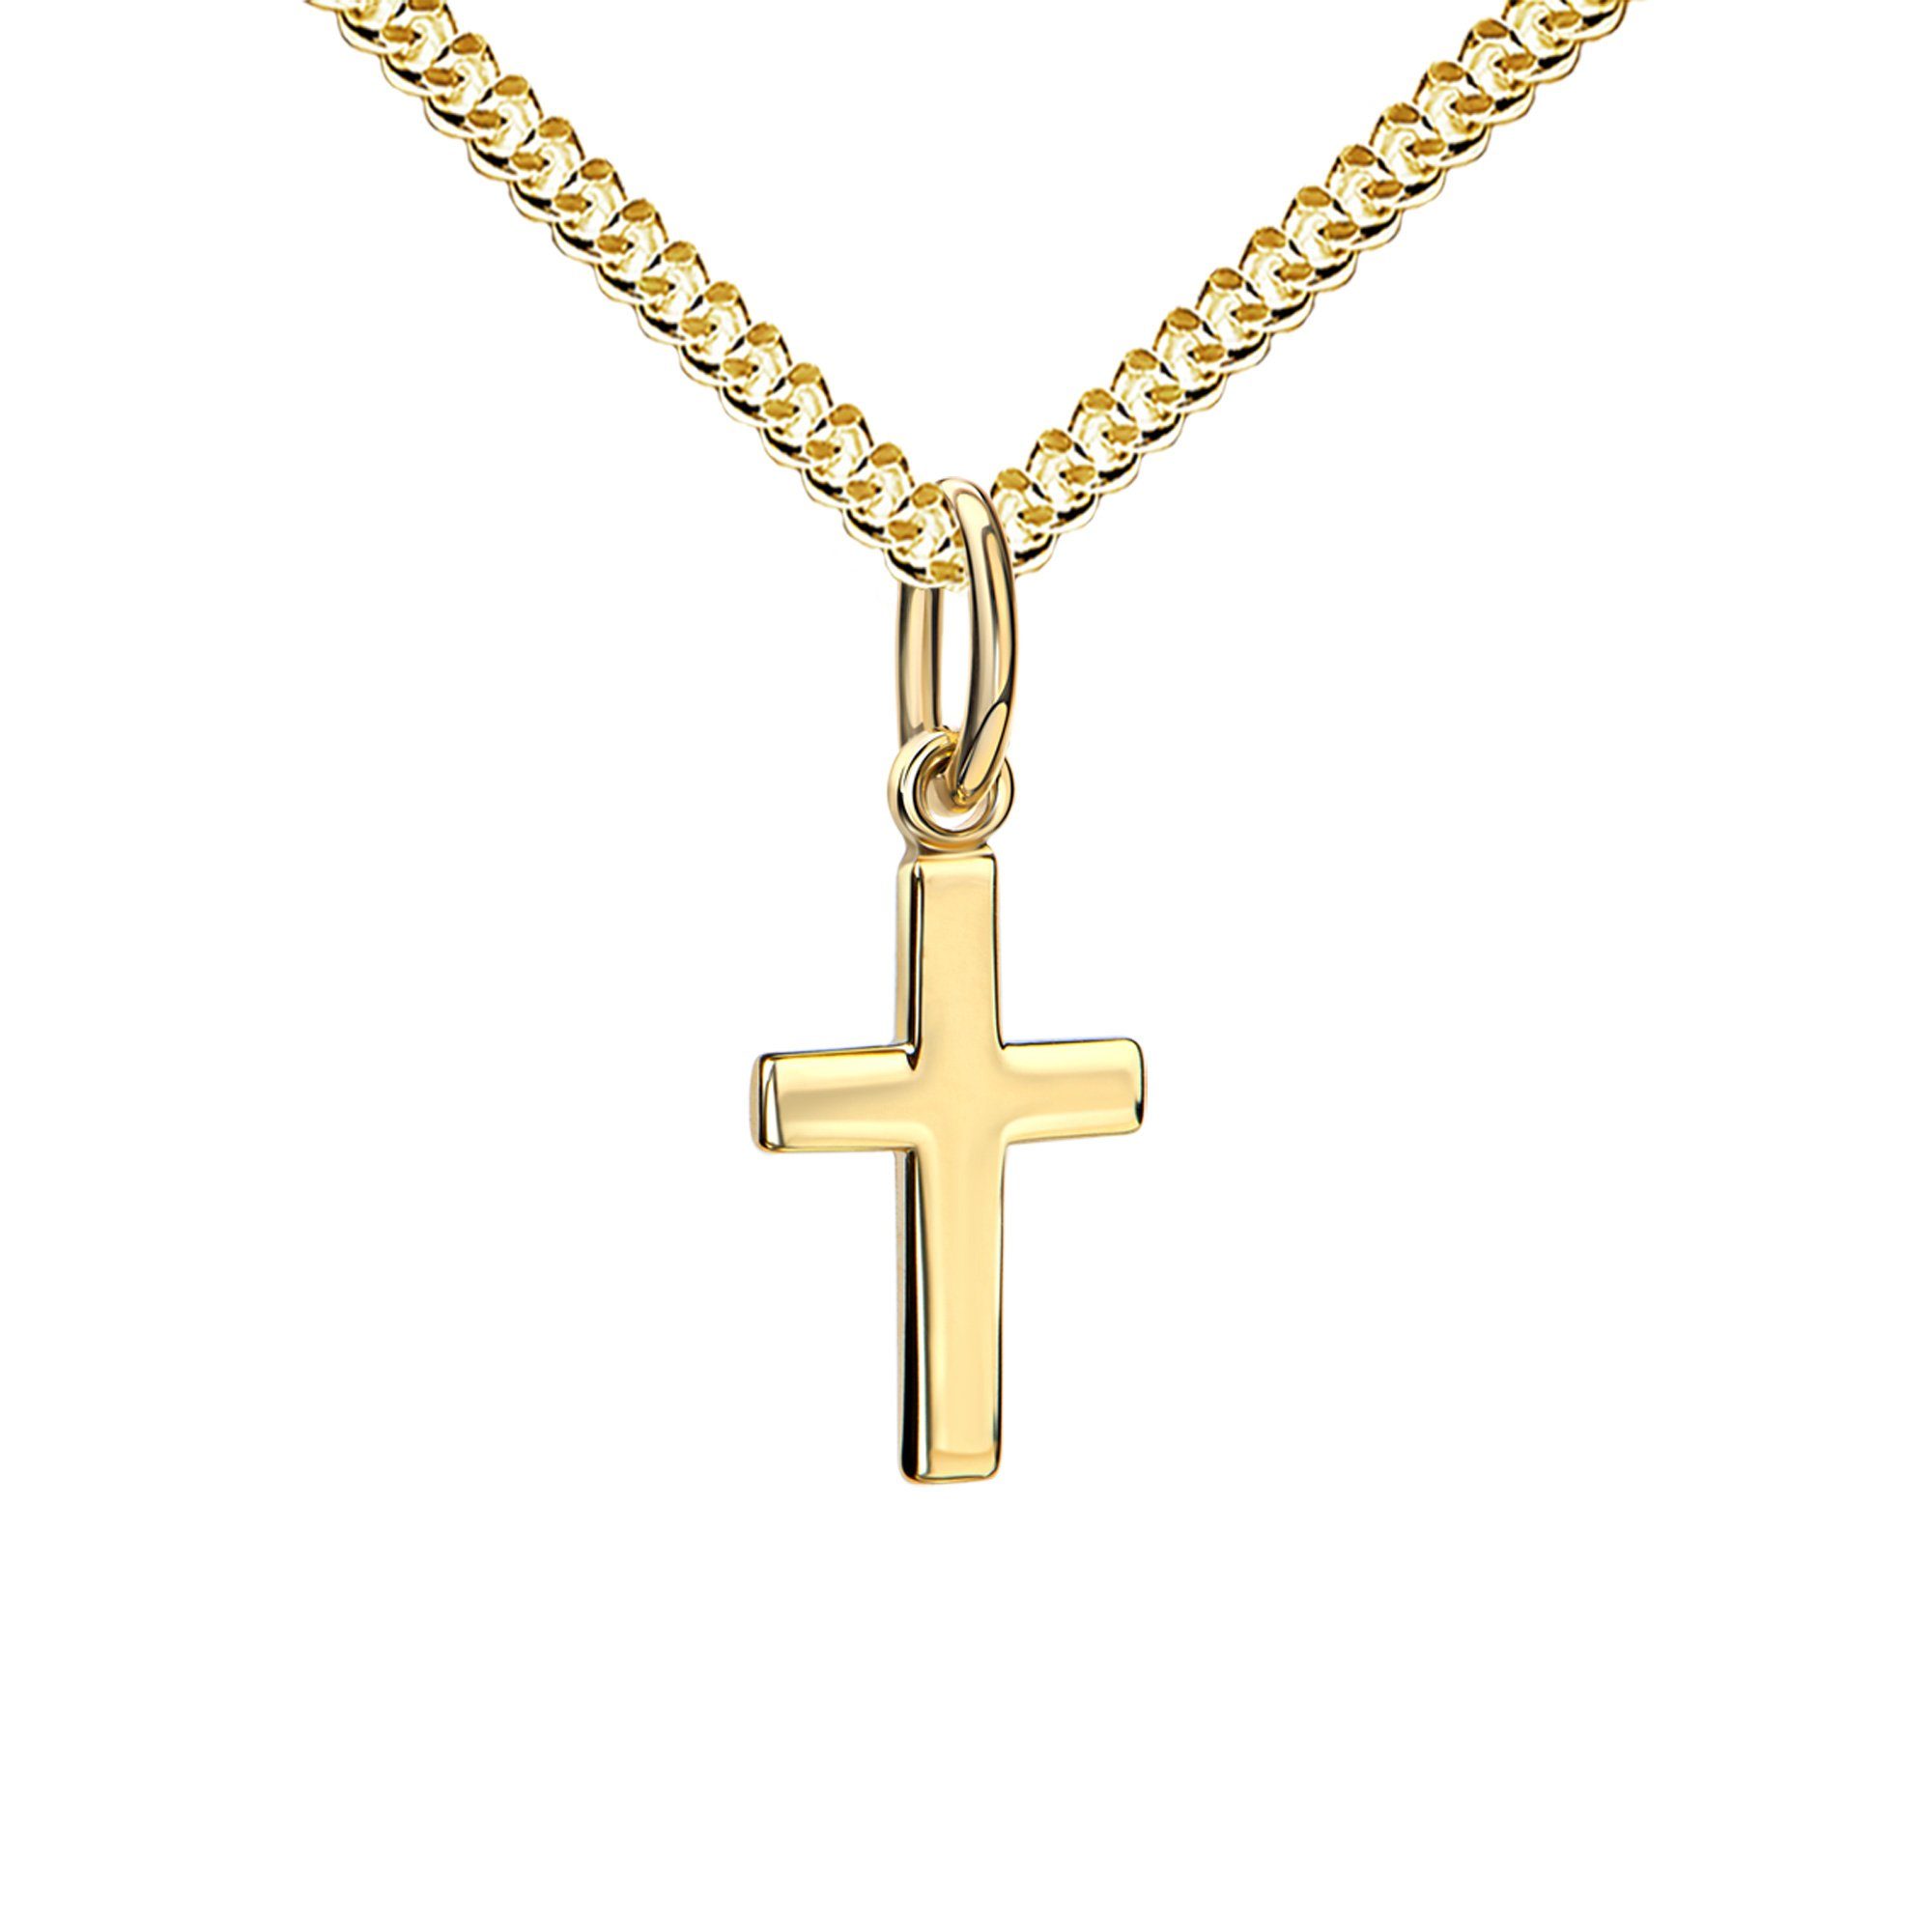 JEVELION Kreuzkette Kleiner Kreuz Anhänger 333 Gold - Made in Germany (Taufkreuz, für Damen und Kinder), Mit Halskette vergoldet- Länge wählbar 36 - 70 cm.